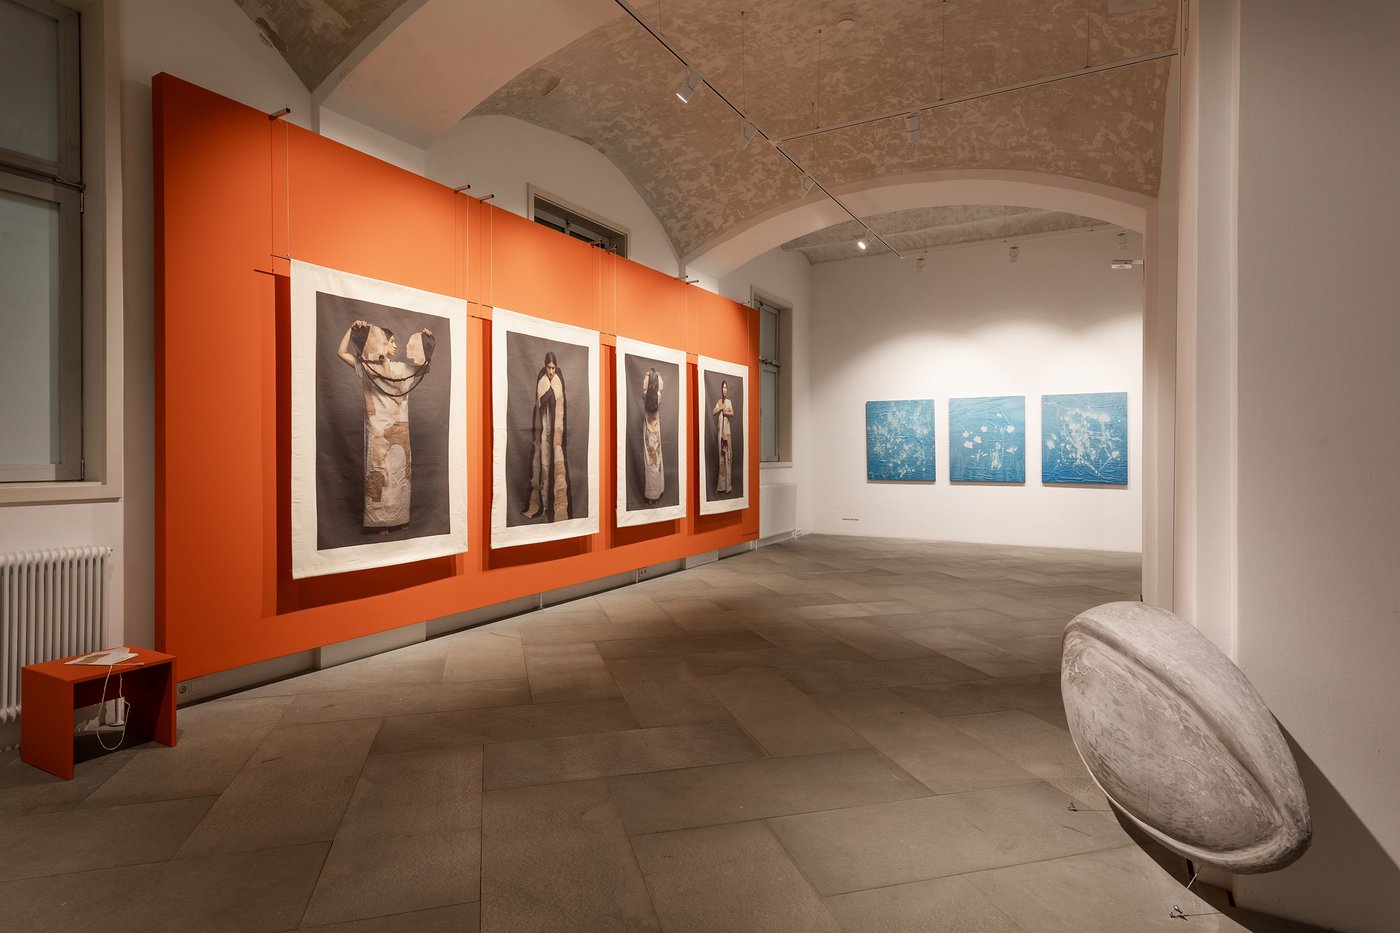 Im Gewölberaum hängen auf der linken Seite vor einer orangen Wand vier Stoffbahnen mit der Abbildung einer Frau in archaisch wirkenden Kleidern. Auf der Rückwand hängen drei blaue abstrakte Malereien, rechts vorne eine linsenförmige Steinskulptur.